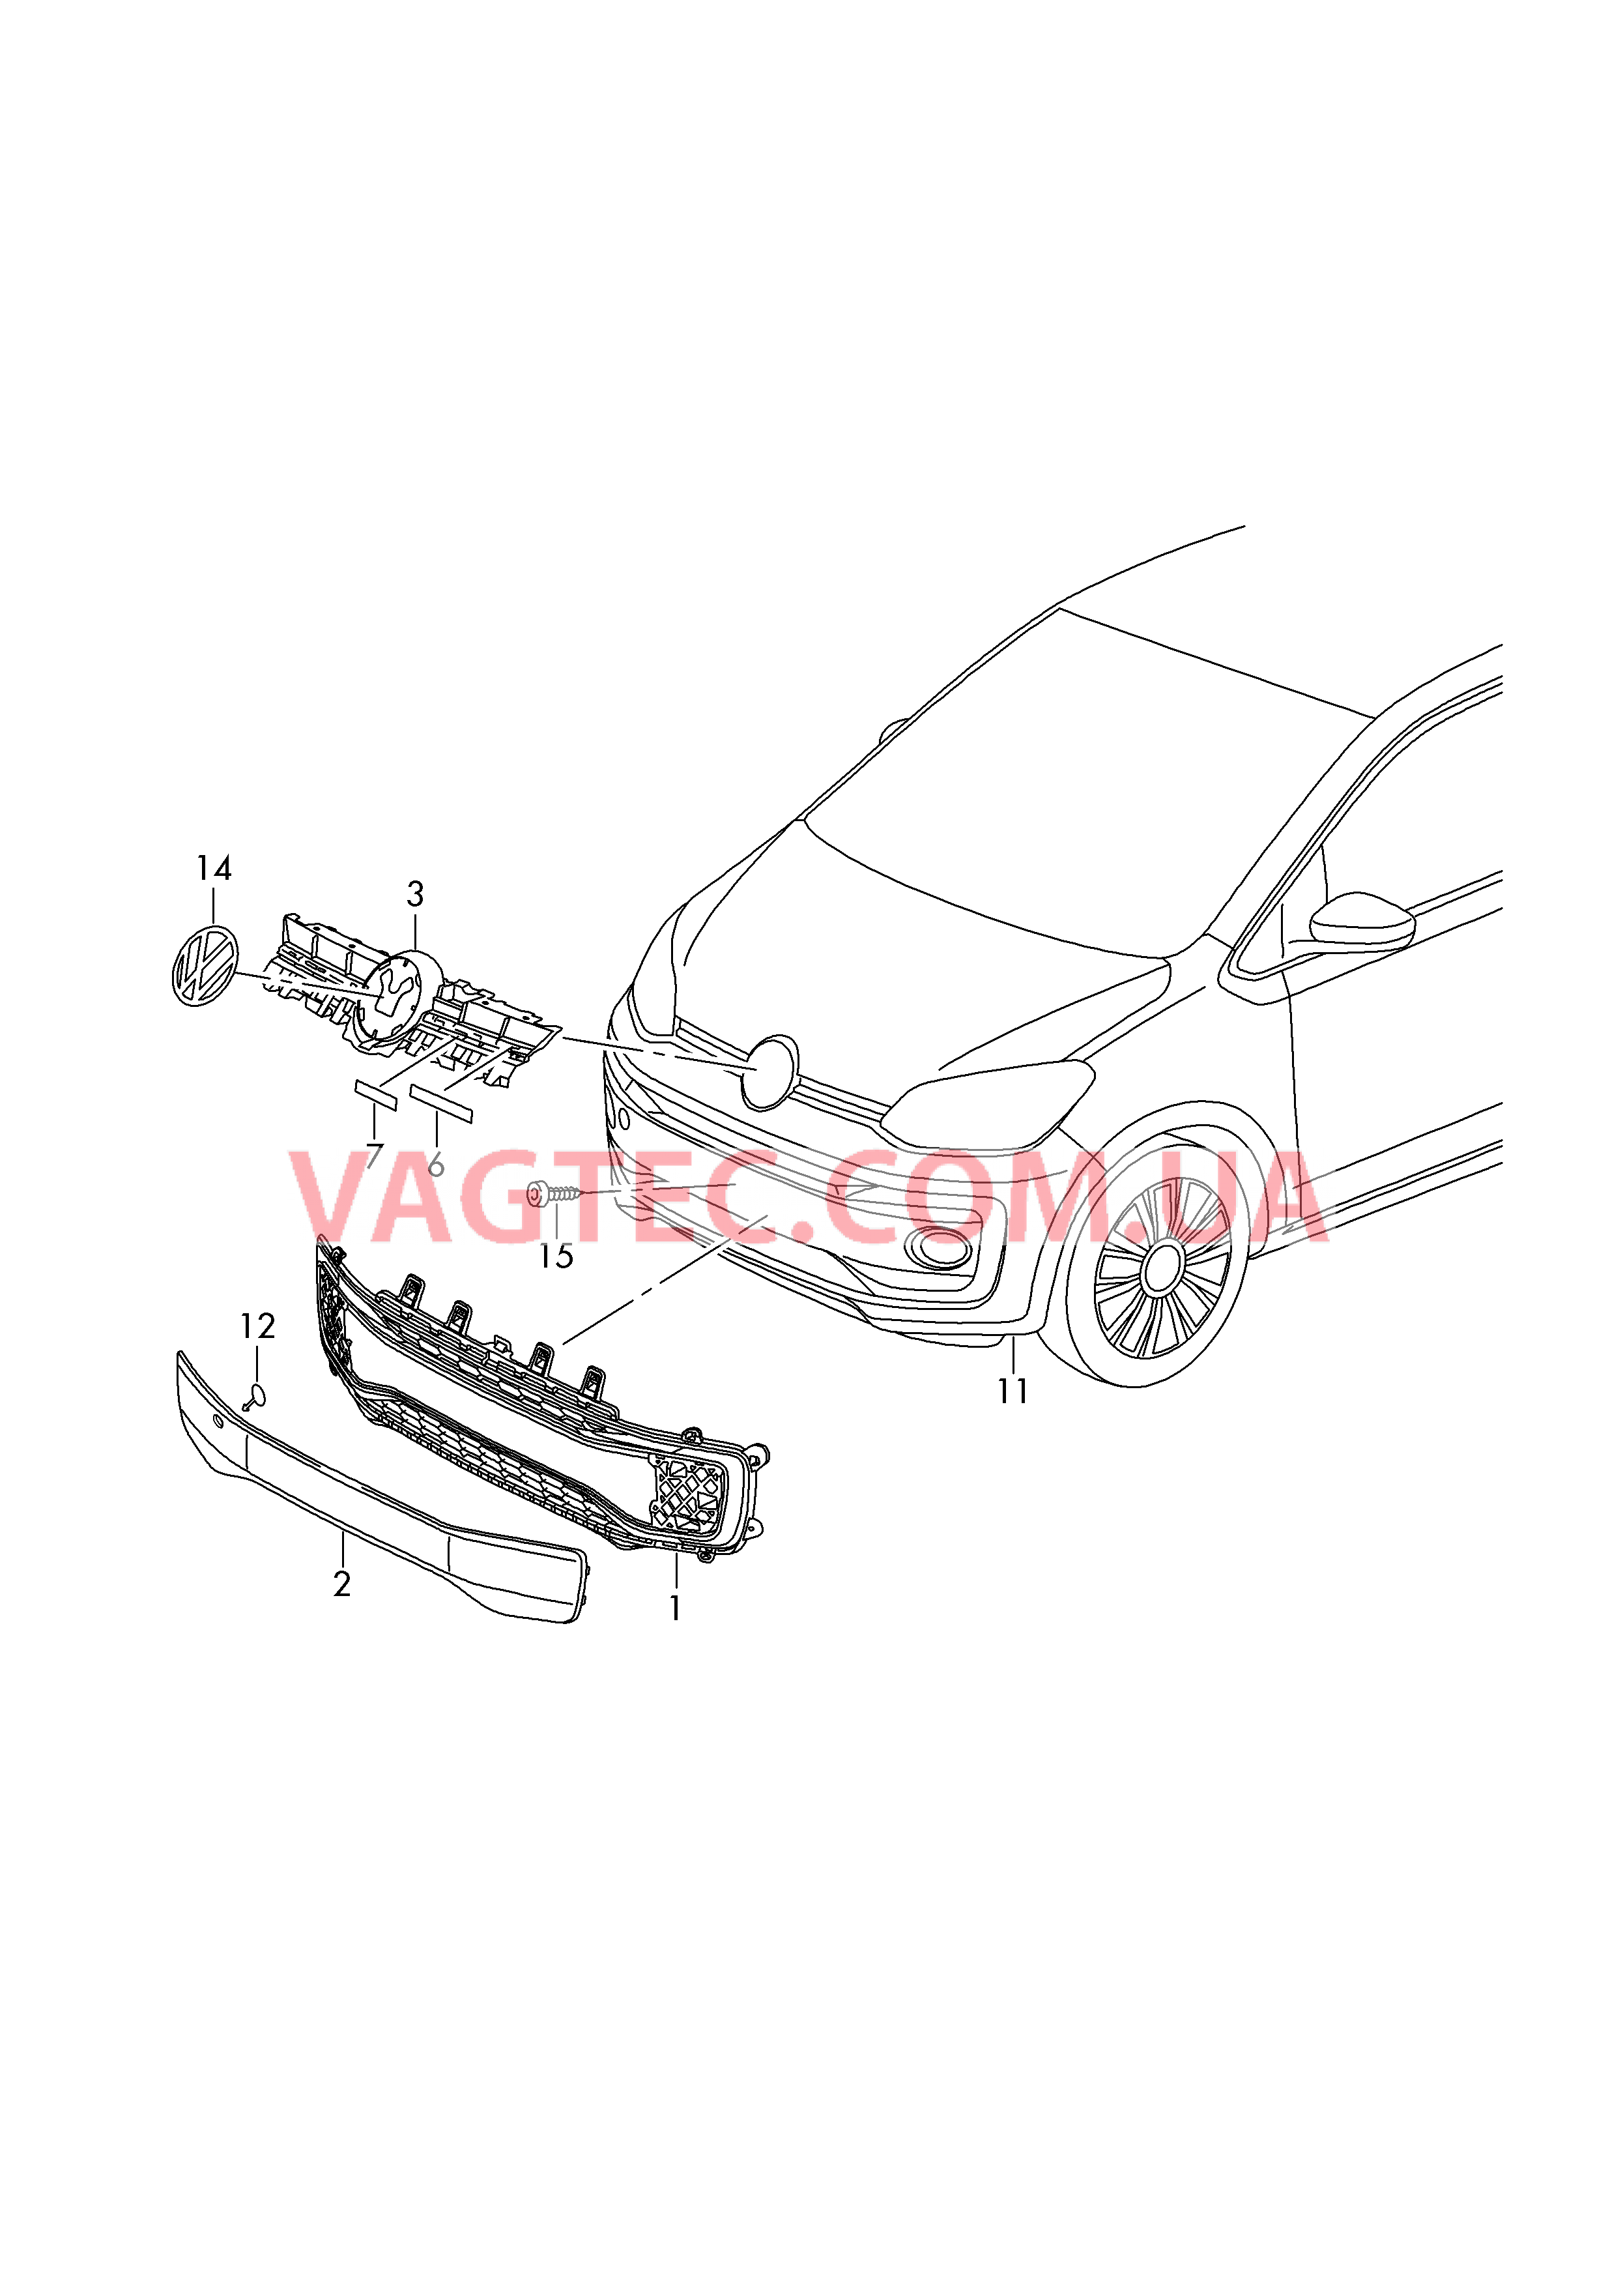 Pешетка радиатора Эмблема VW  для VOLKSWAGEN UP 2019-1